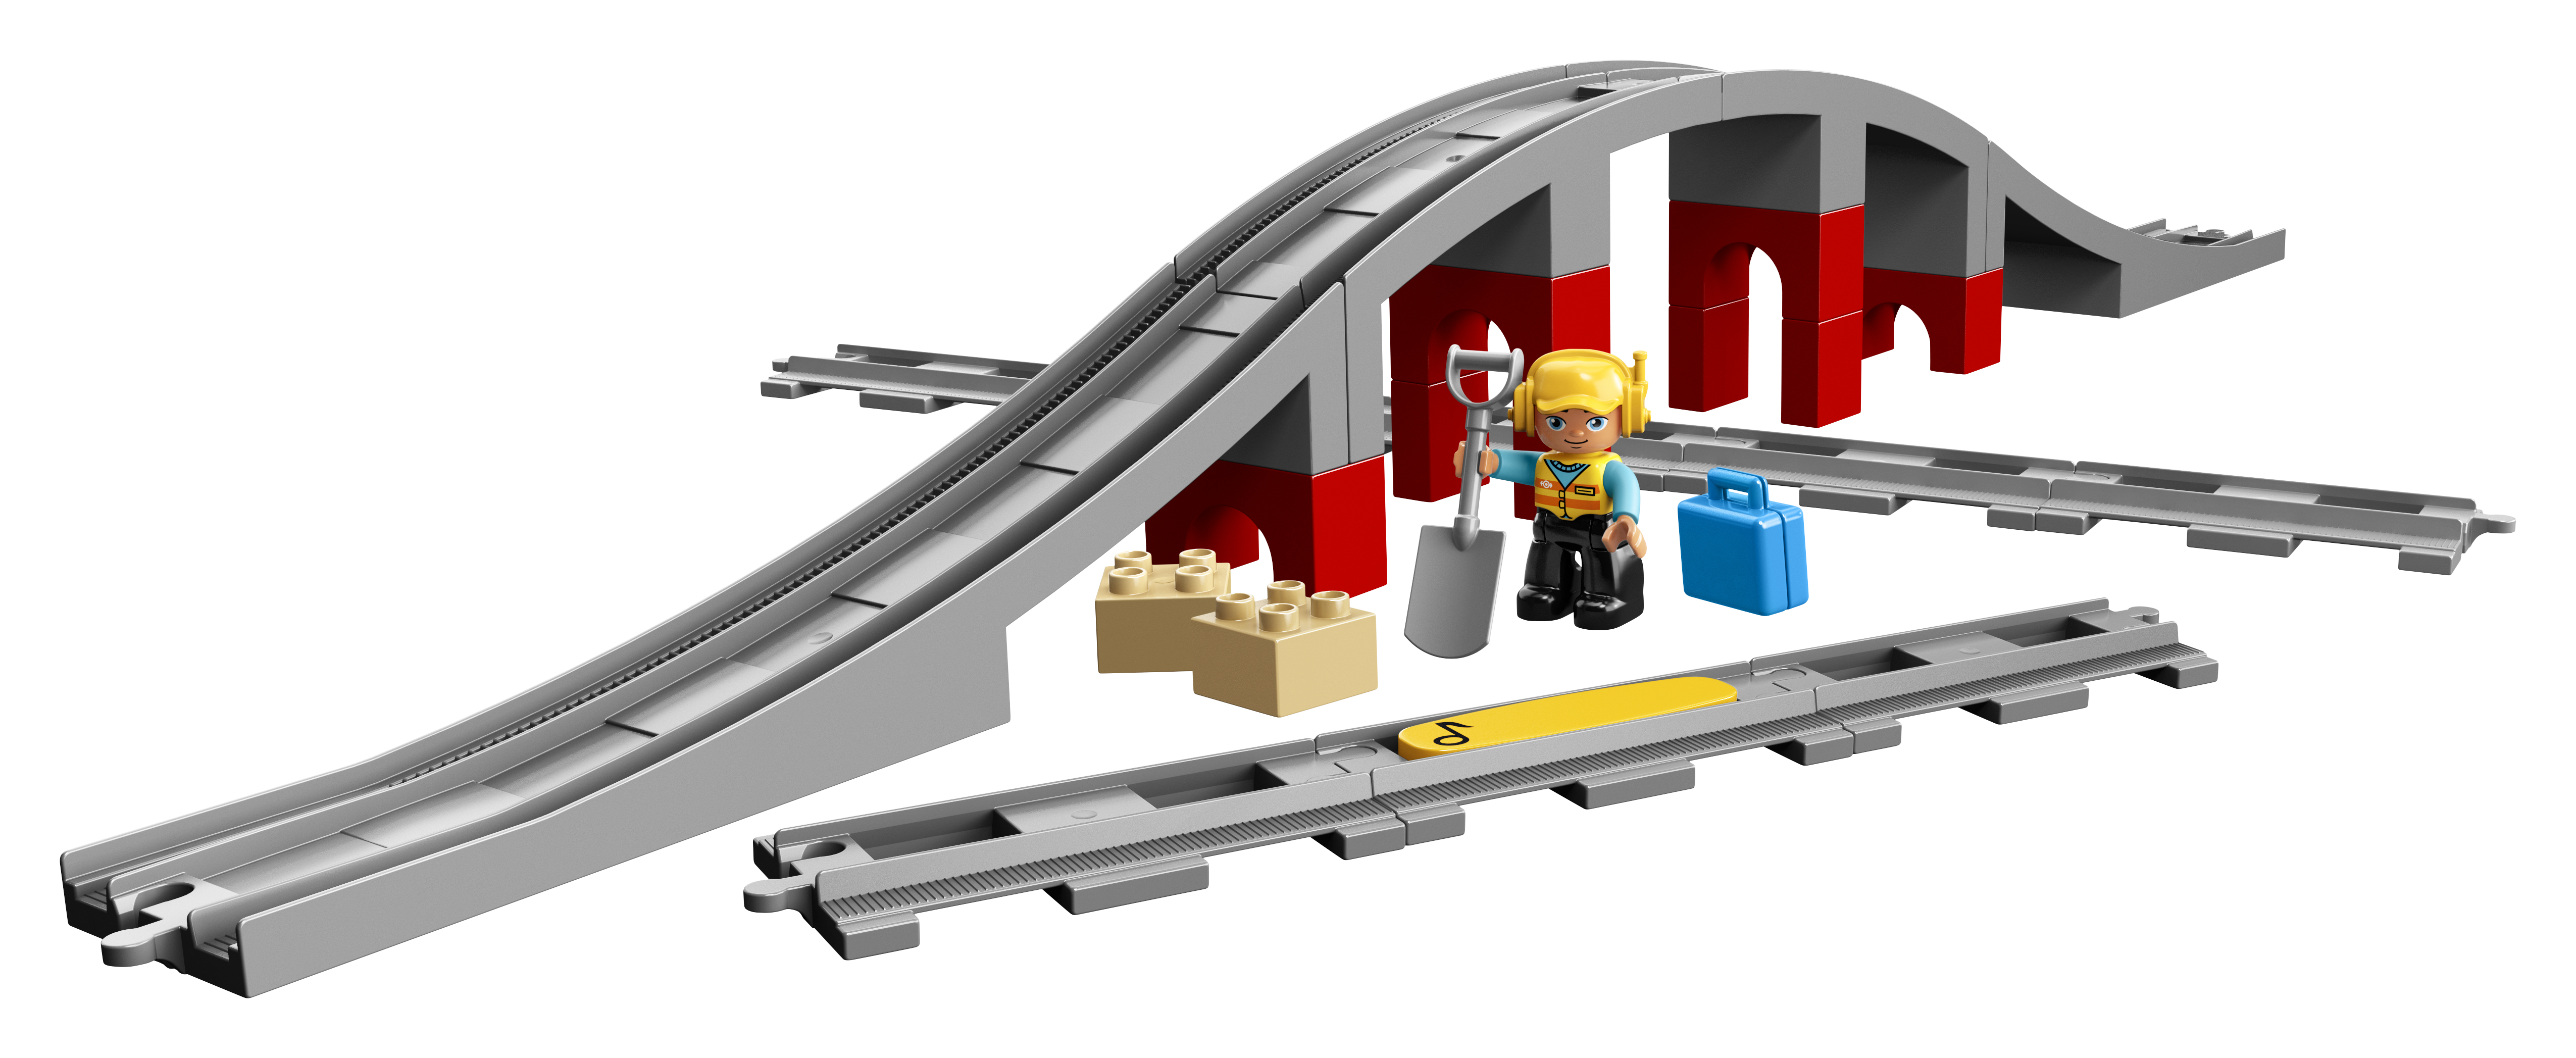 LEGO 10872 Eisenbahnbrücke und Mehrfarbig Schienen Bausatz